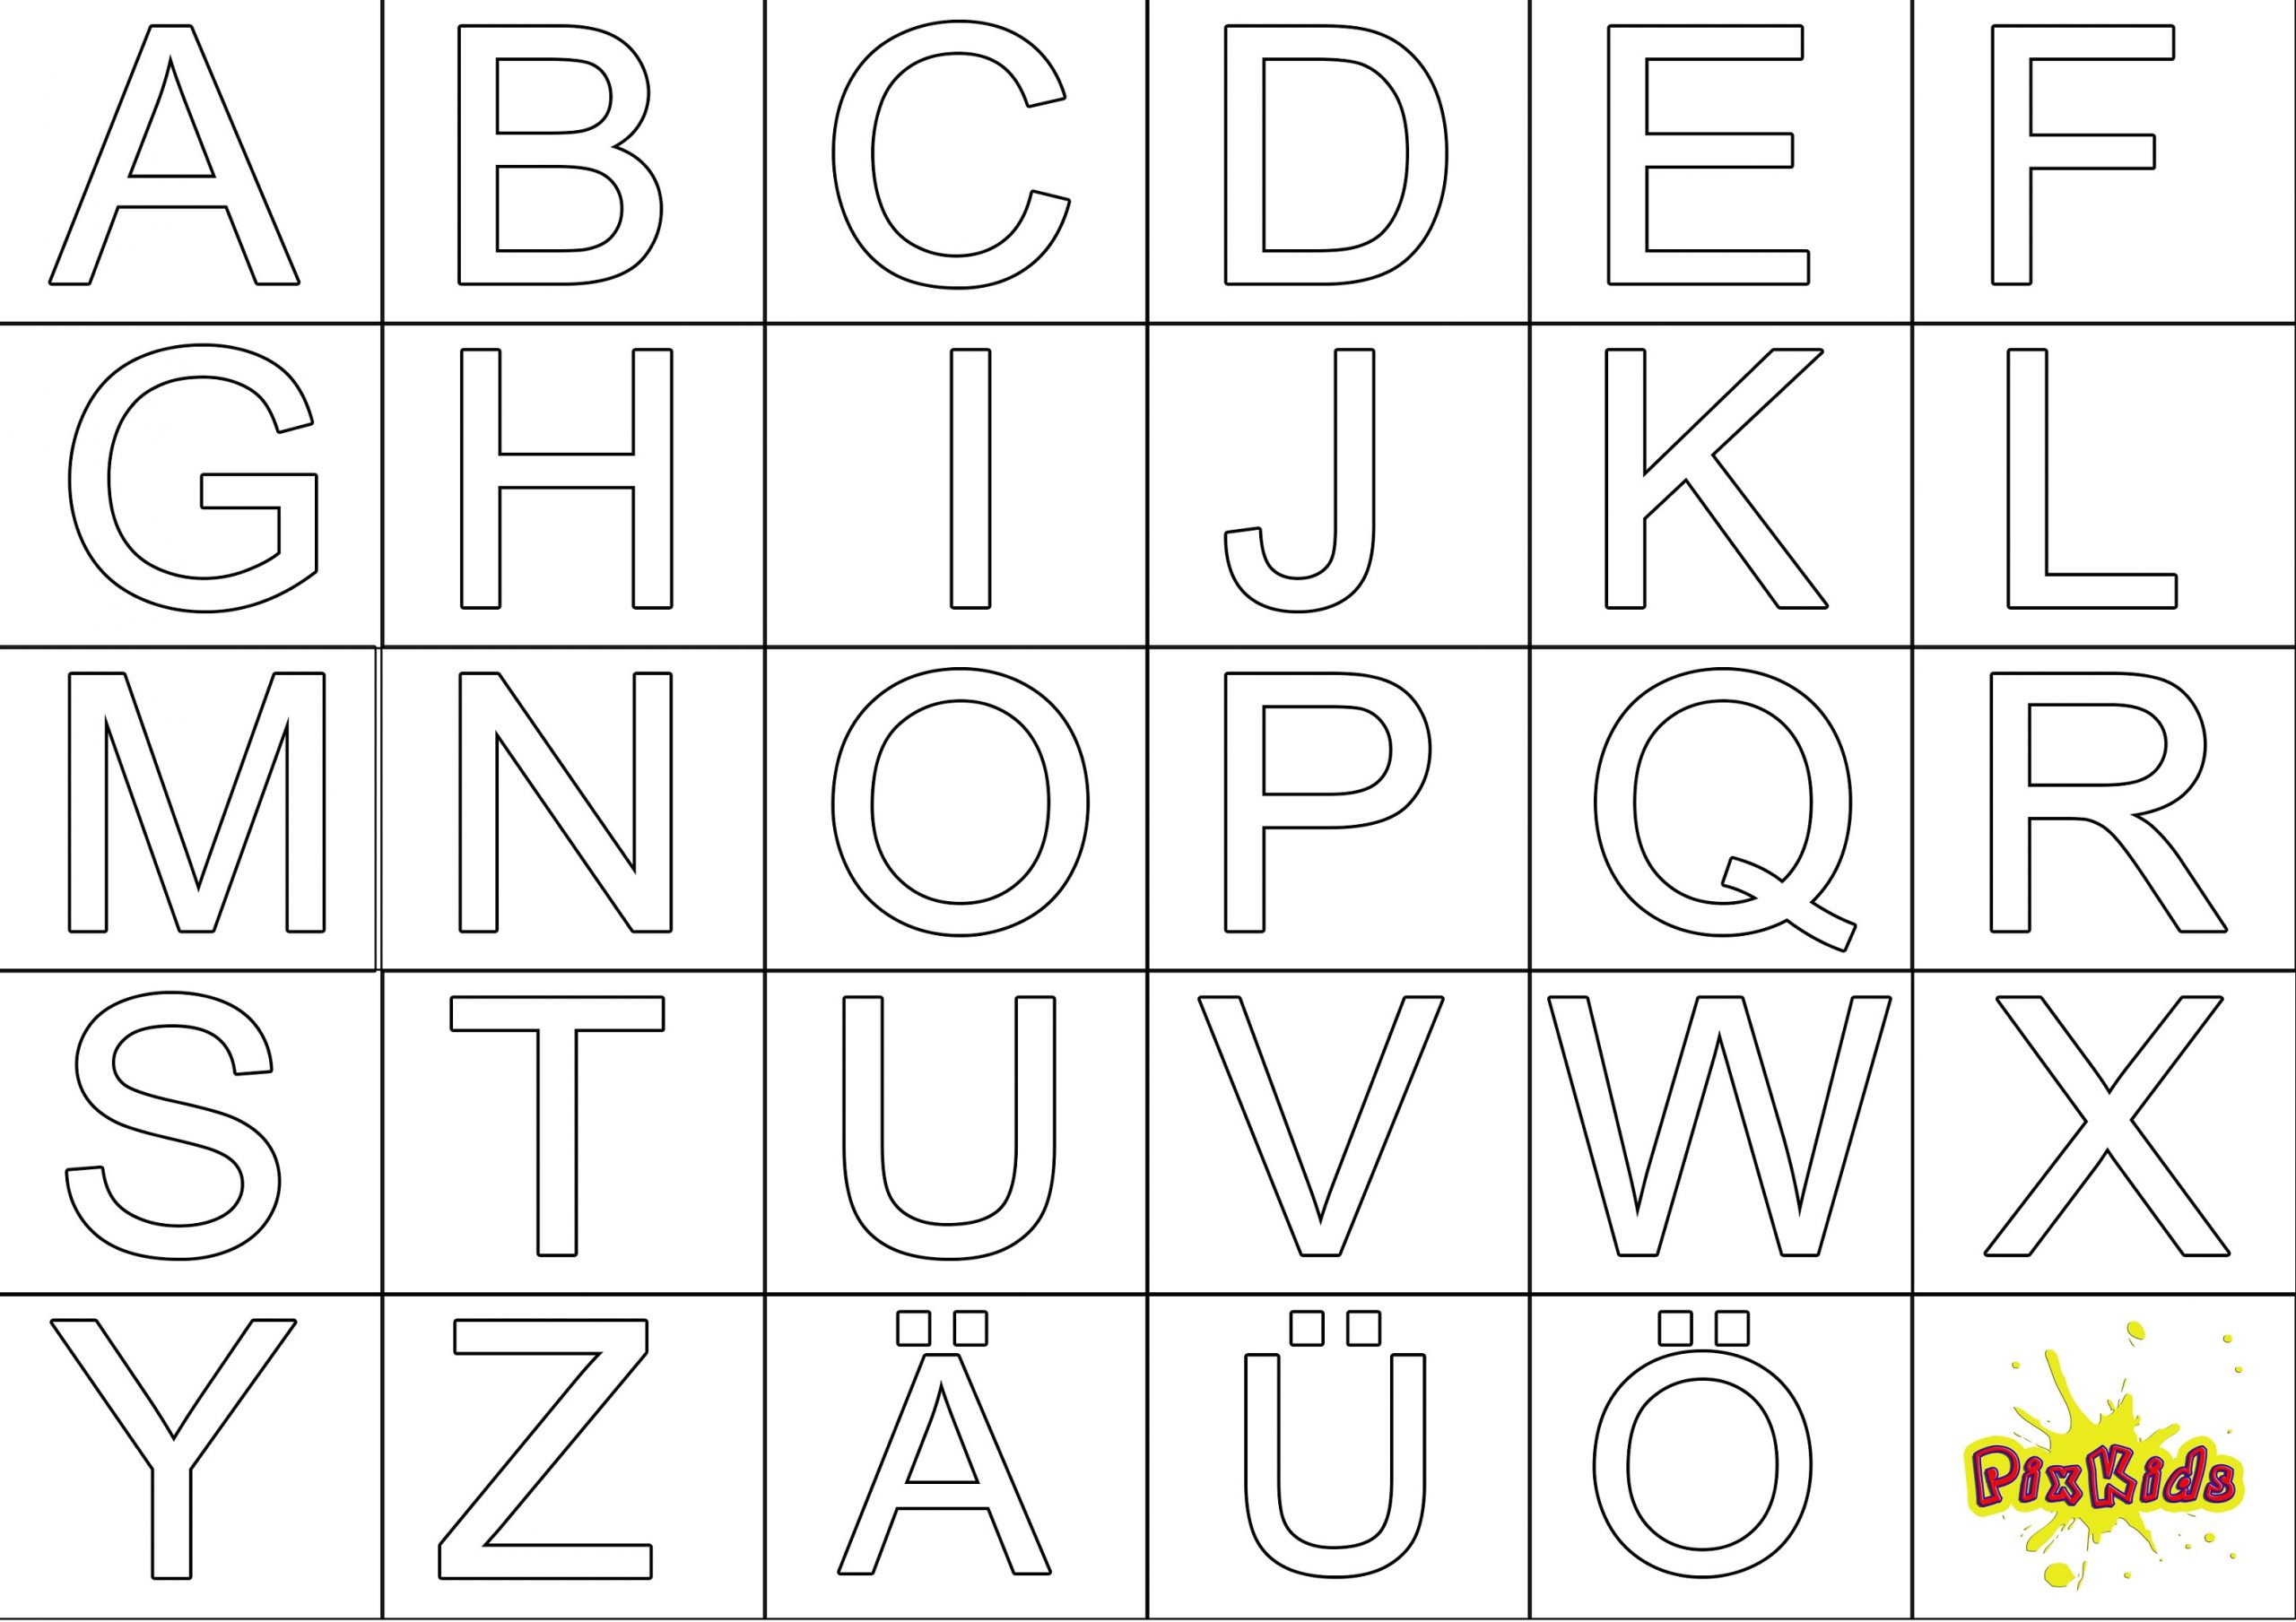 Ausmalbild Abc - Kostenlose Malvorlagen verwandt mit Ausmalbuchstaben